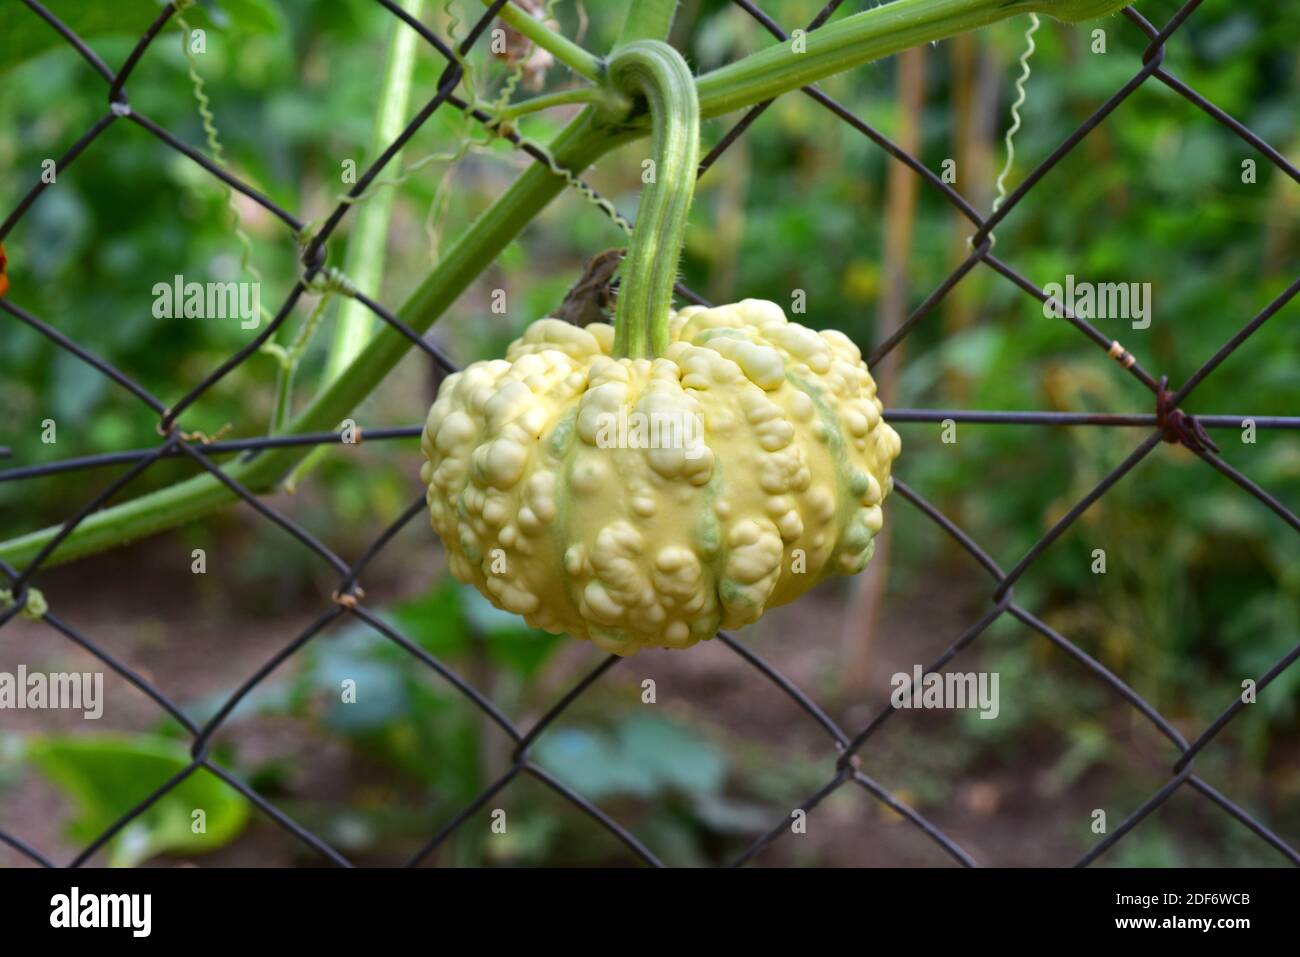 La zucca di Warty (Cucurbita pepo verrucosa) è una pianta coltivata che si arrampica annualmente. Dettaglio frutta. Foto Stock